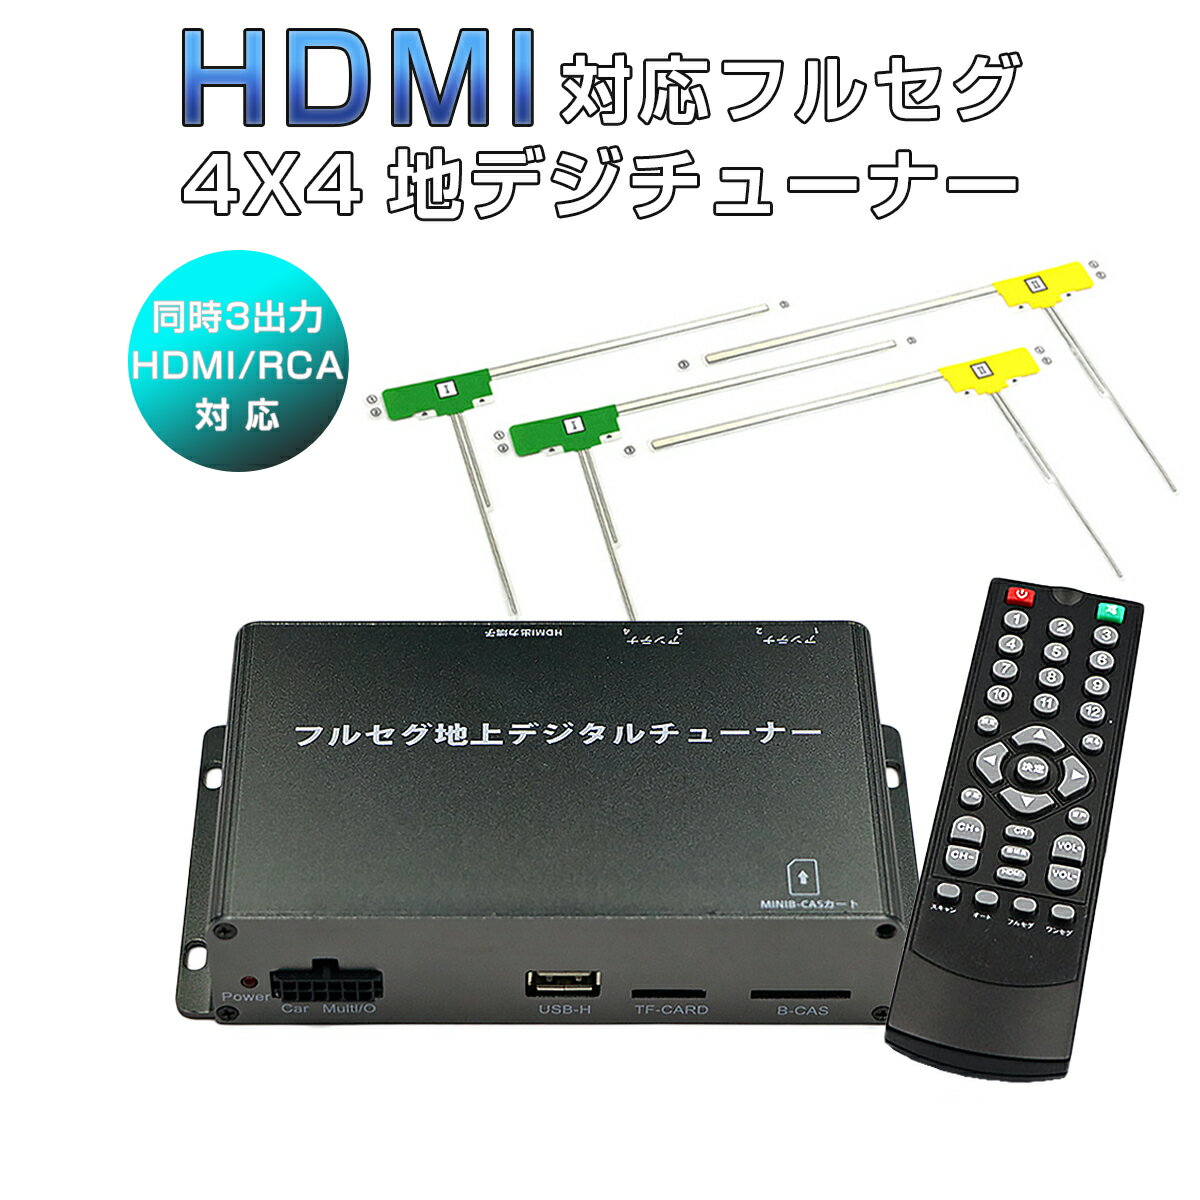 地デジチューナー カーナビ ワンセグ フルセグ HDMI 4x4 高性能 4チューナー 4アンテナ 高画質 自動切換 150km/hまで受信 古い車載TVやカーナビにも使える 12V/24V フィルムアンテナ miniB-CAS…